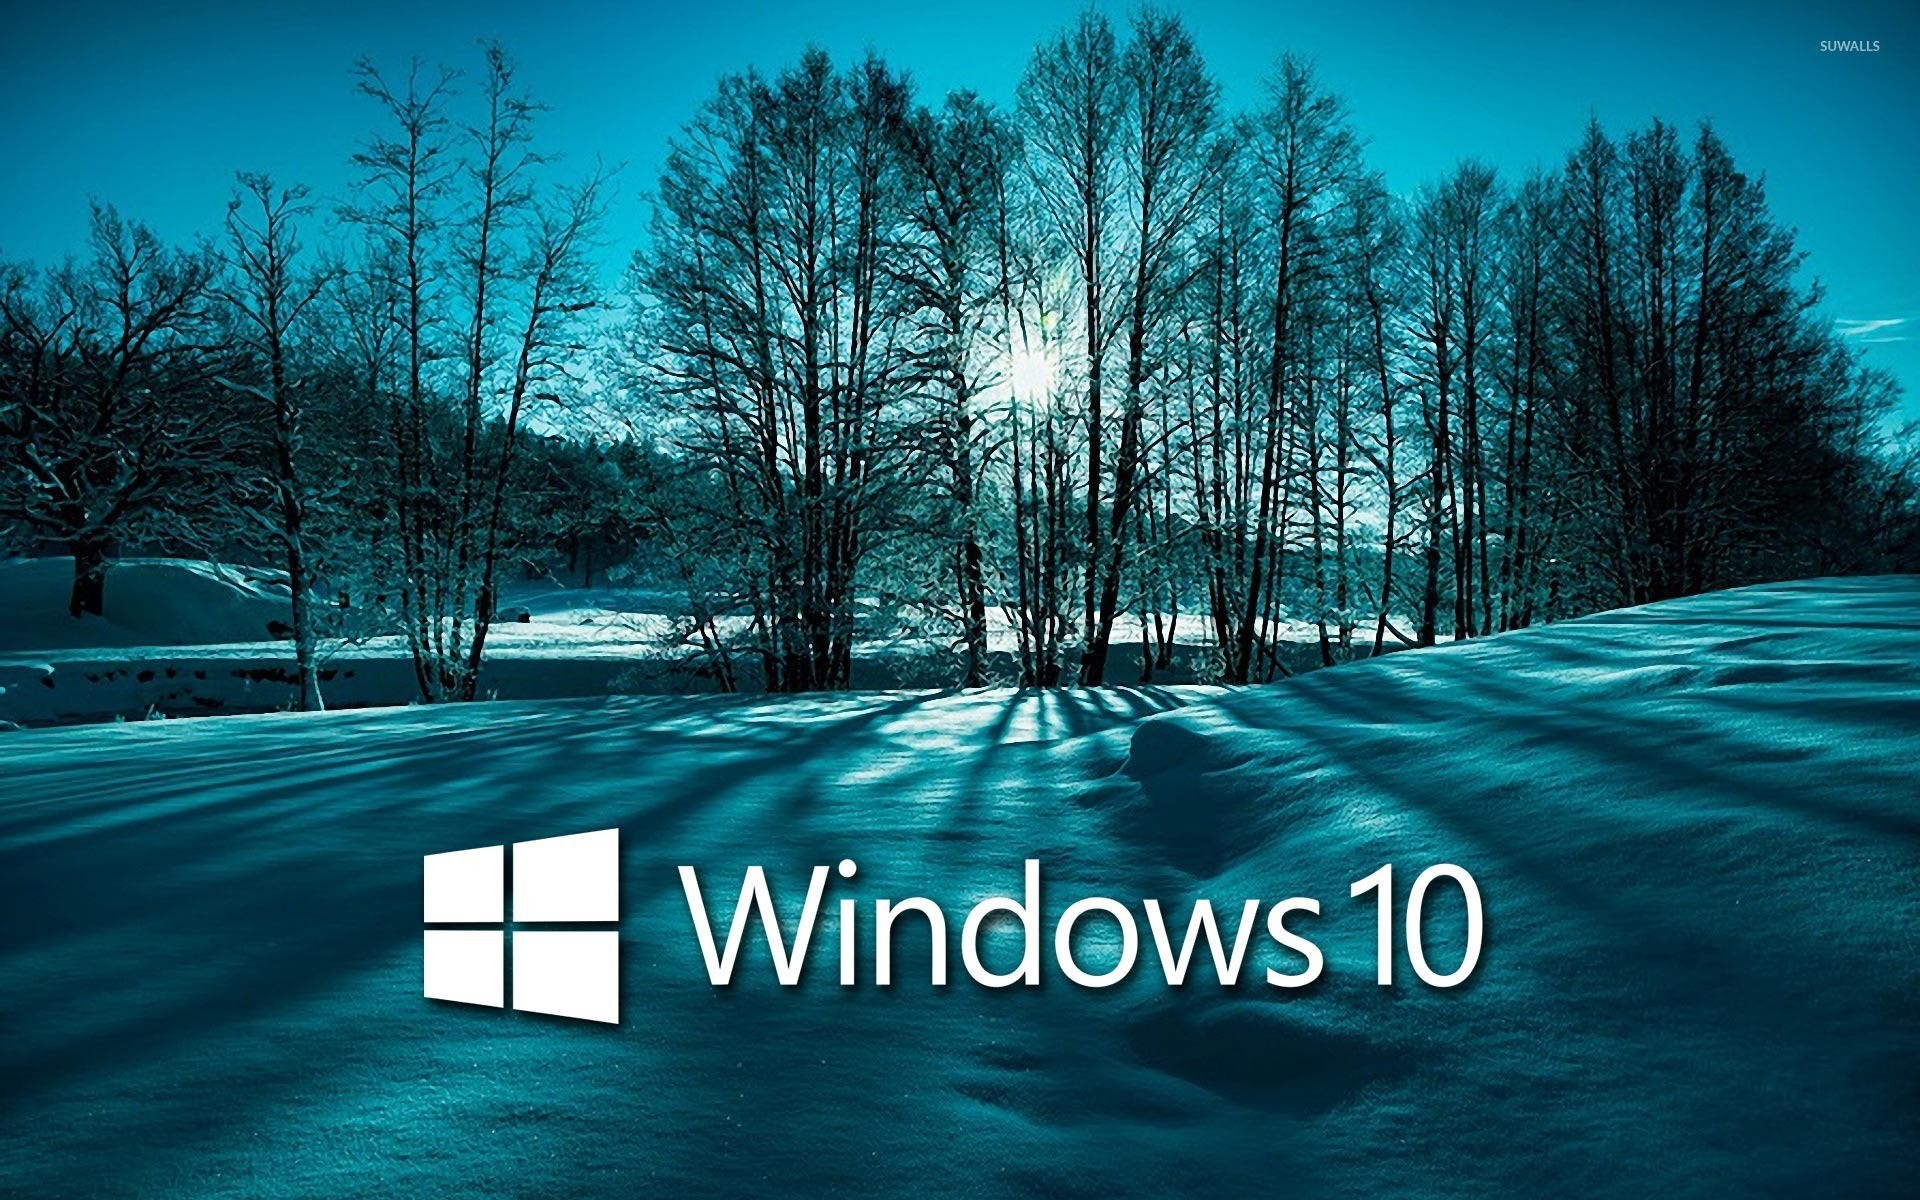 1920x1200 Windows 10 on snowy trees white text logo wallpaper